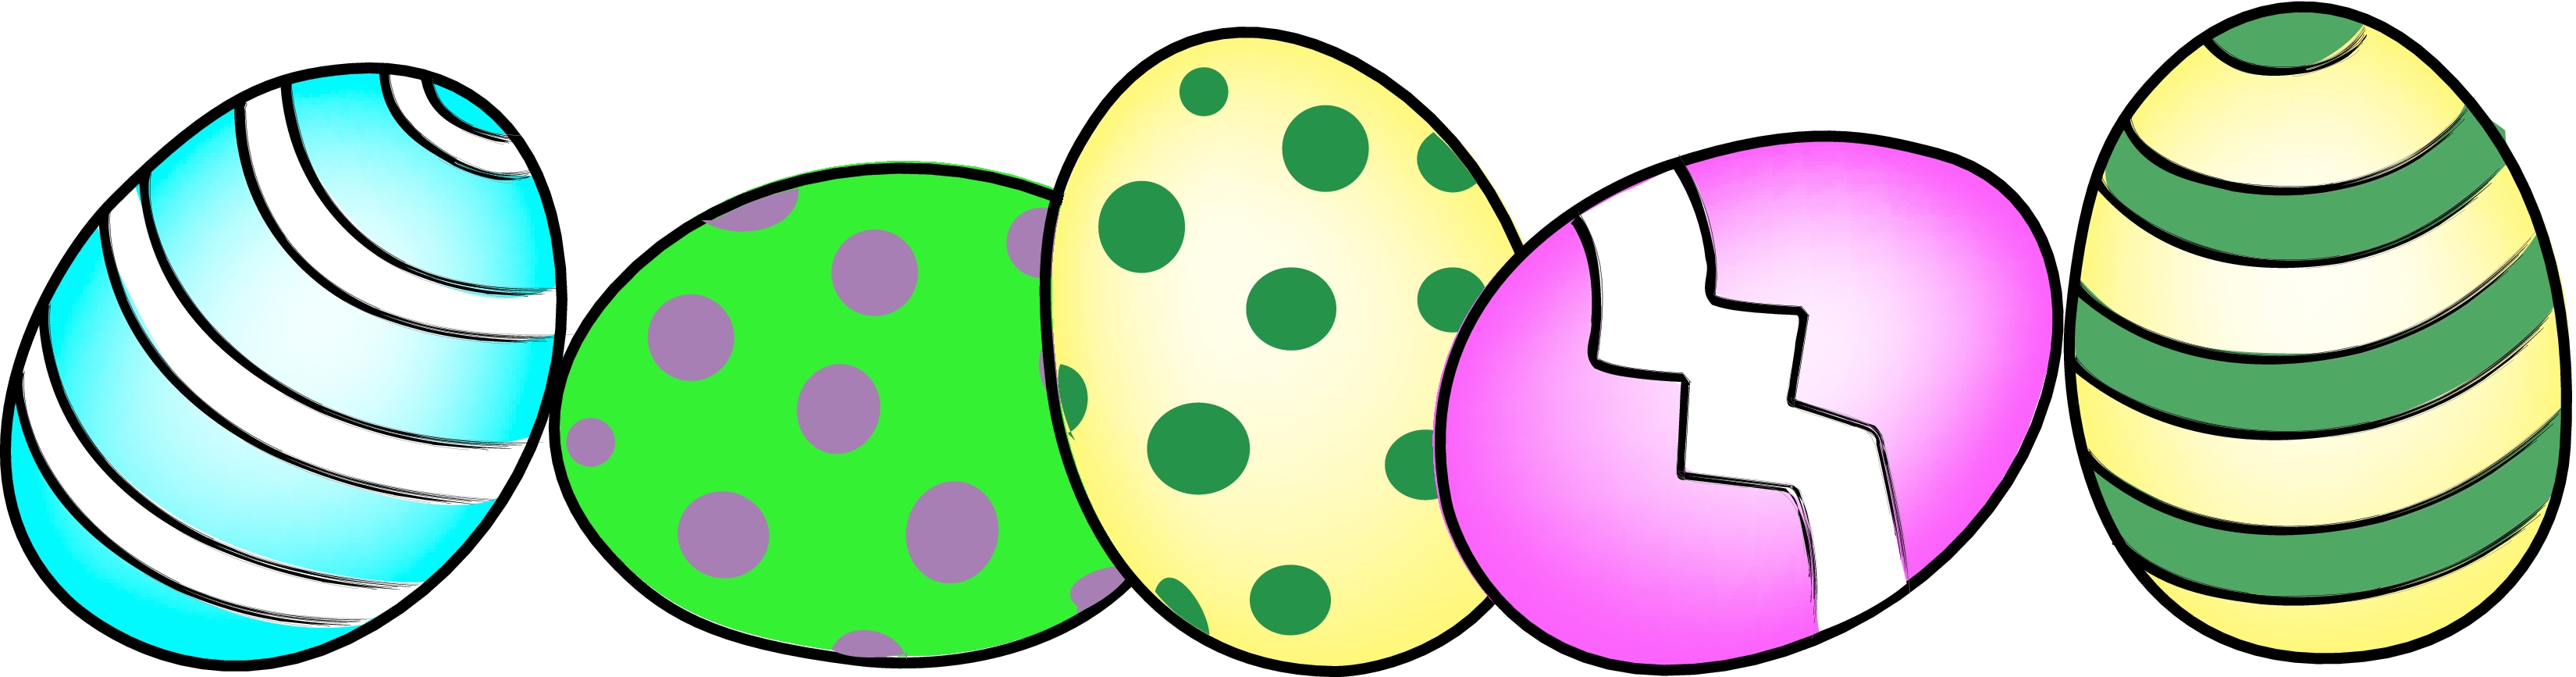 easter egg clipart - Easter Eggs Clip Art